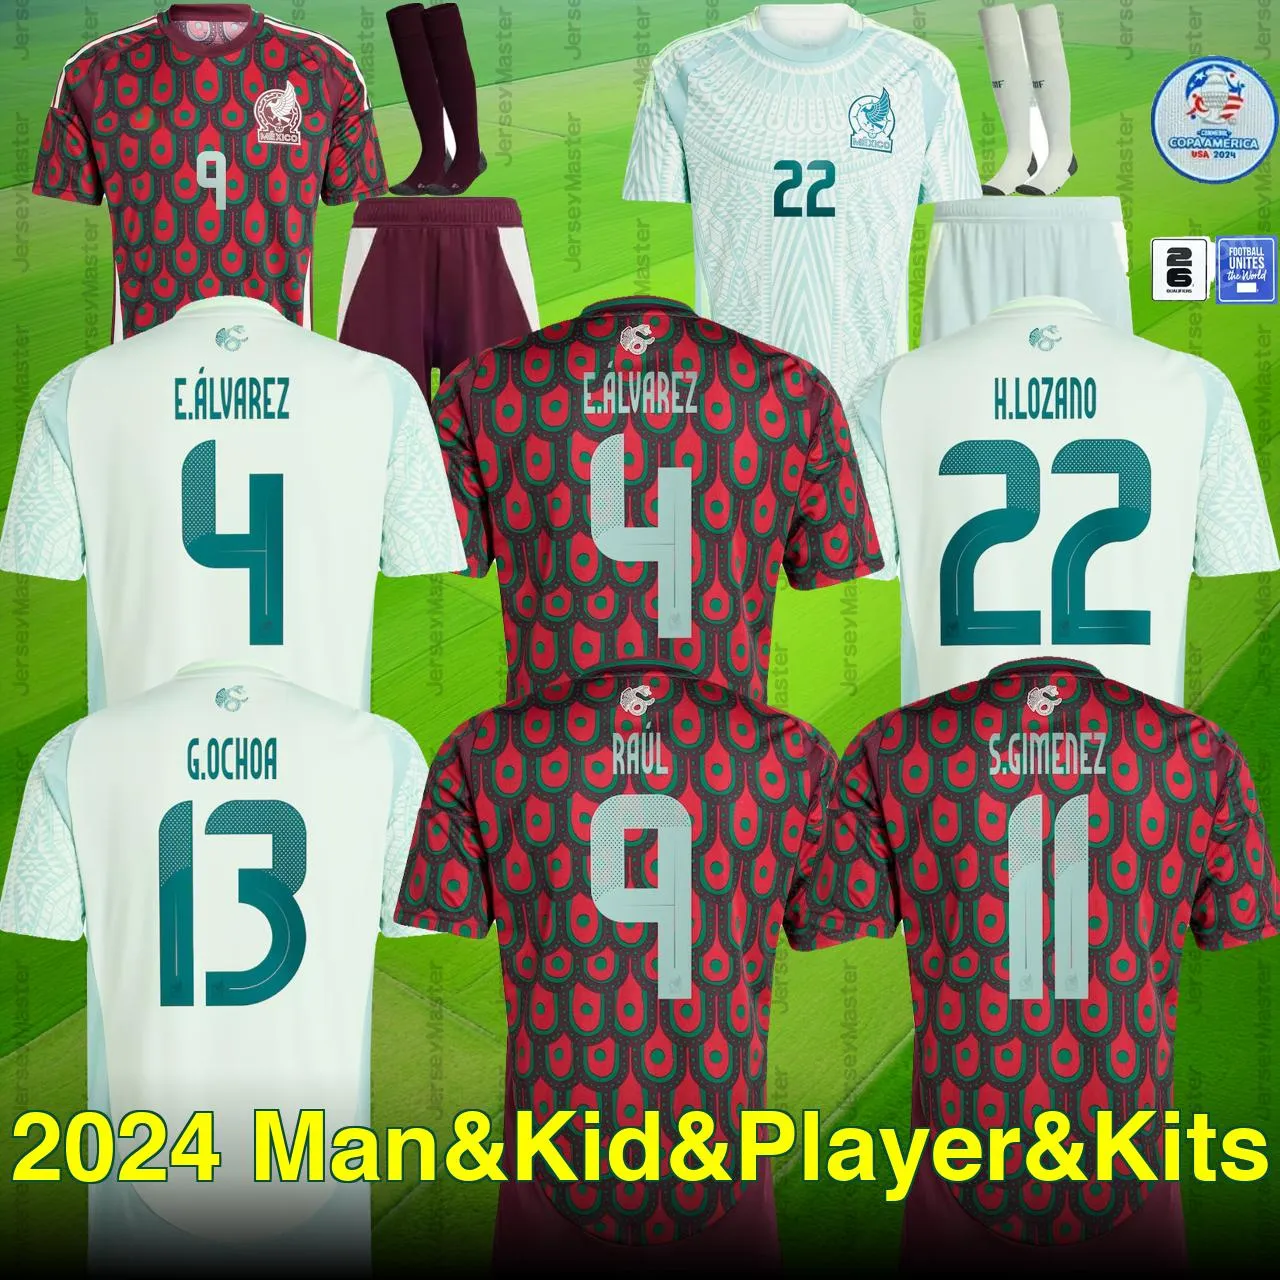 Mexico 2024 Copa America 2026 QUALIFIERS RAUL CHICHARITO Soccer Jerseys LOZANO DOS SANTOS 24 25 H.LOZANO Men Kids Football Shirts Uniforms Fans Player Version